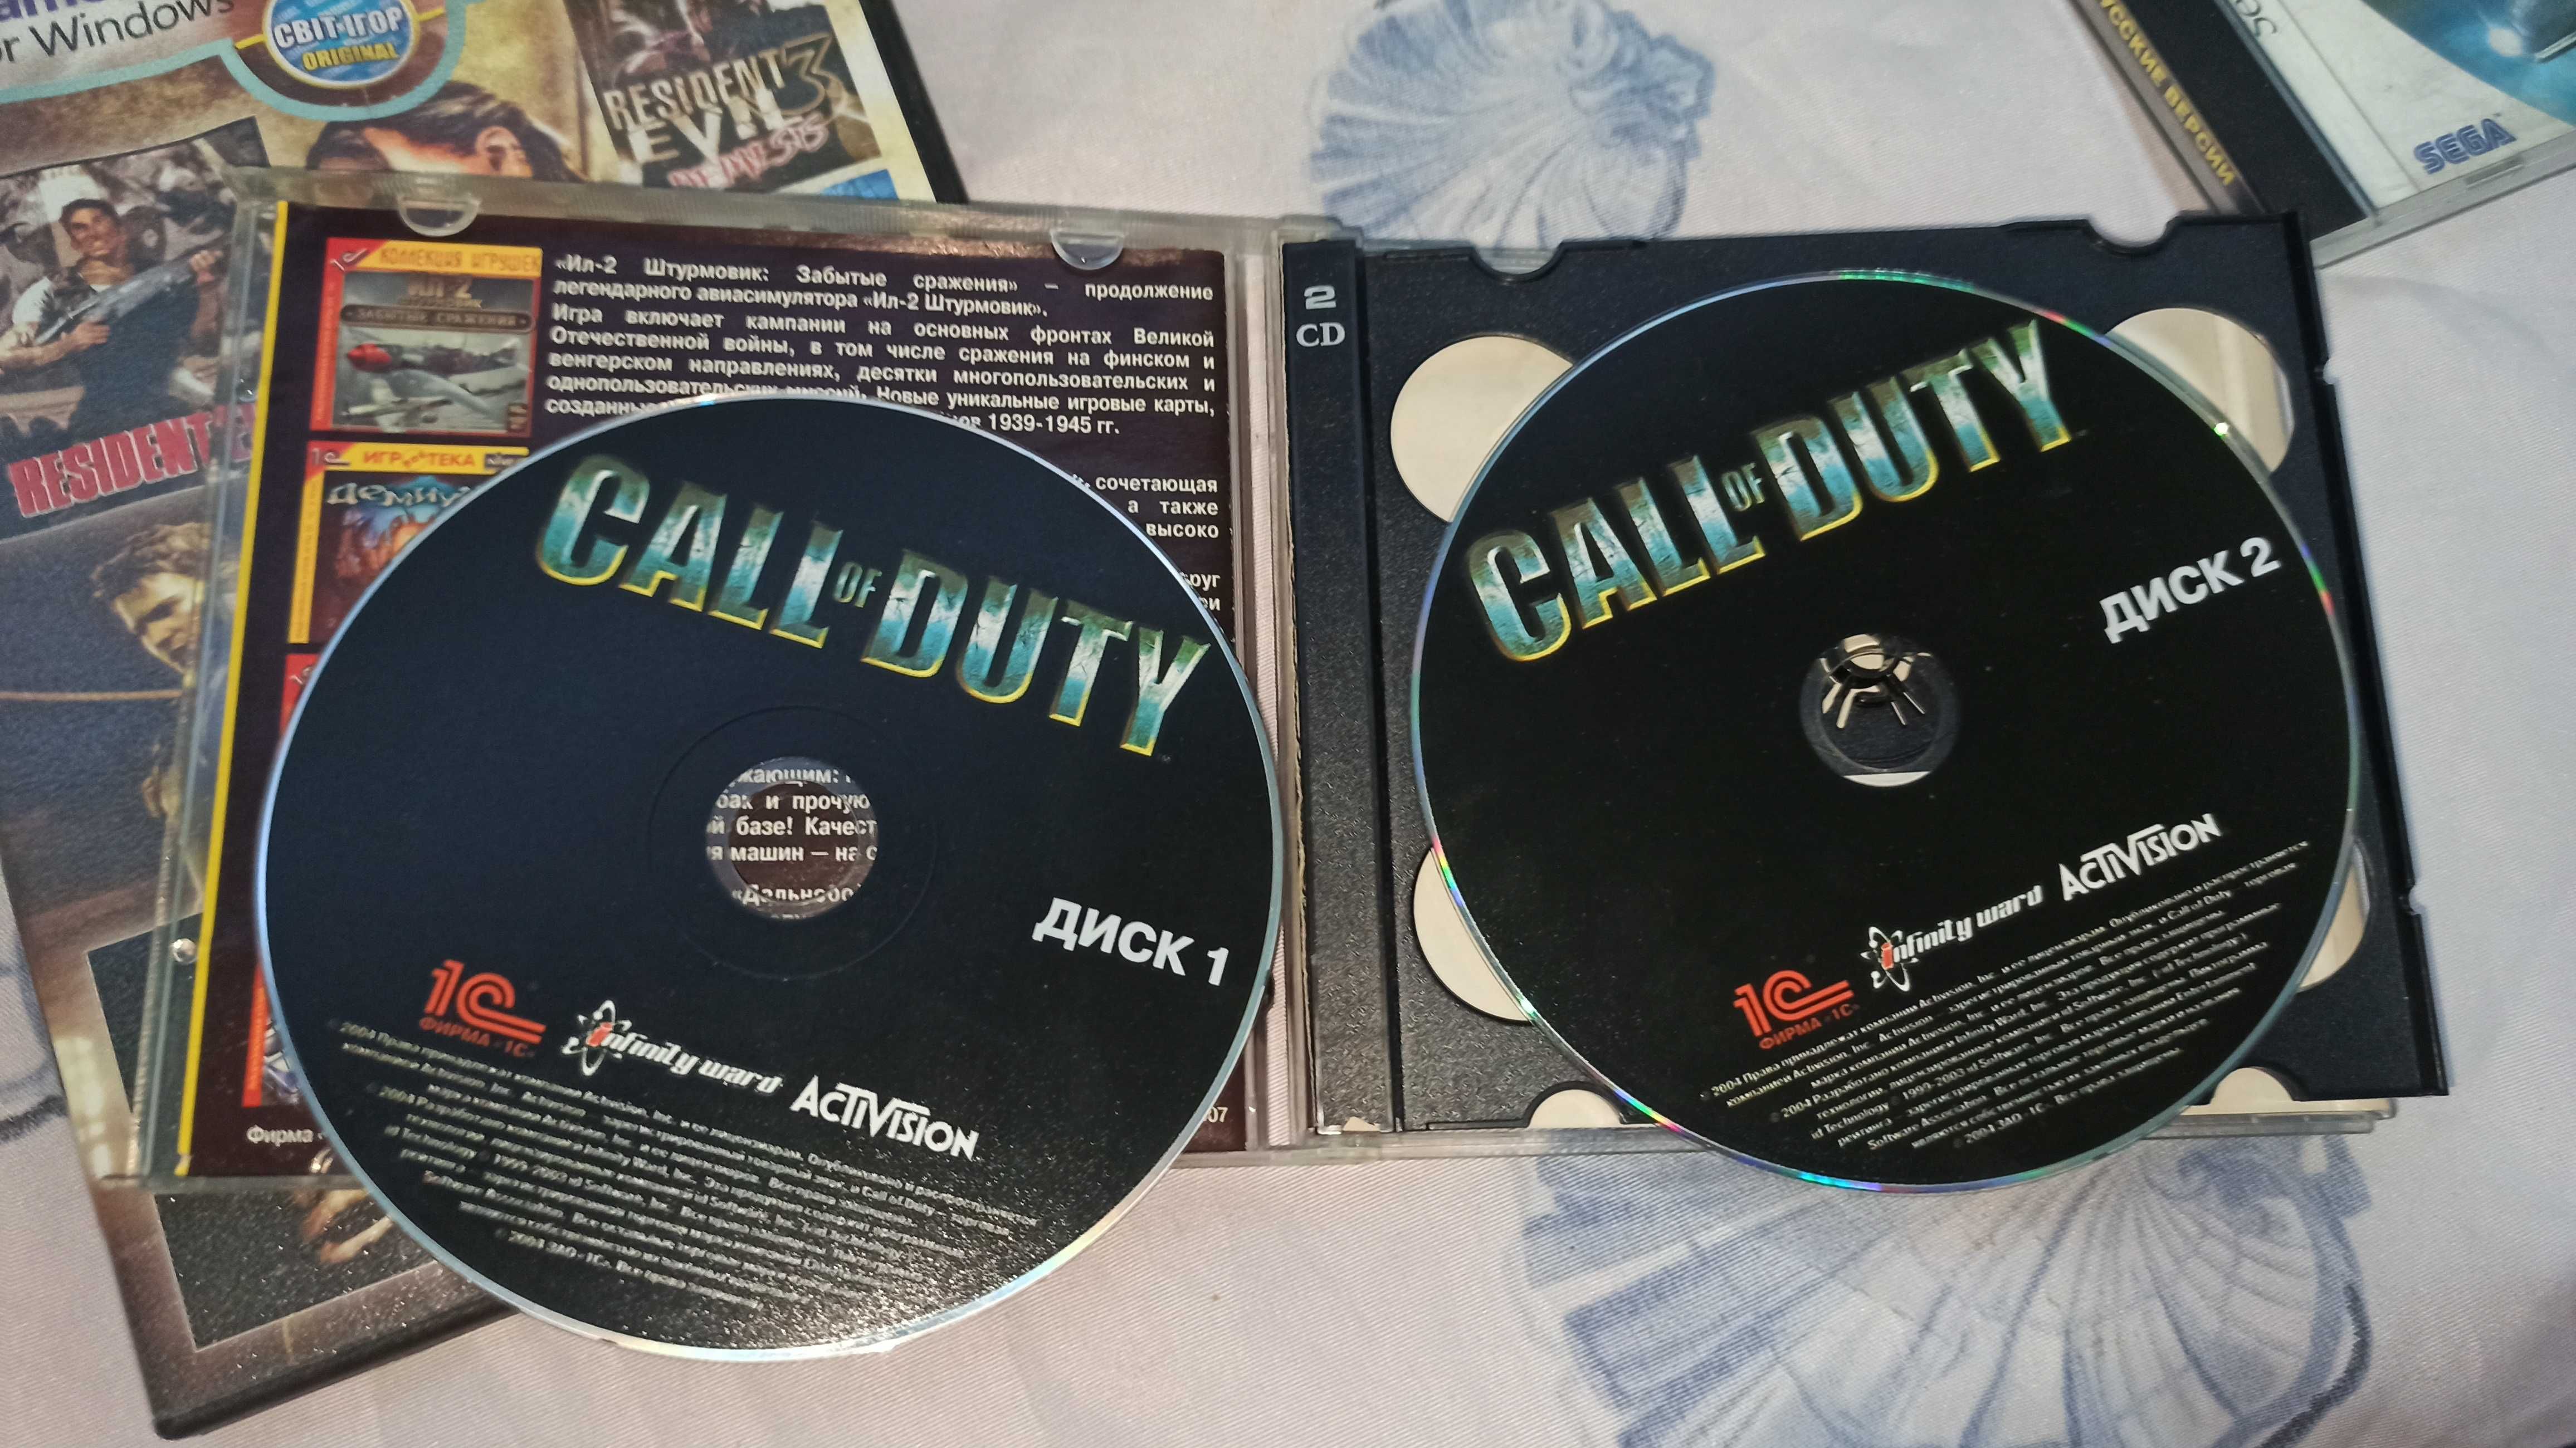 Комплект дисков с играми Call of Duty , Quake , Resident Evil